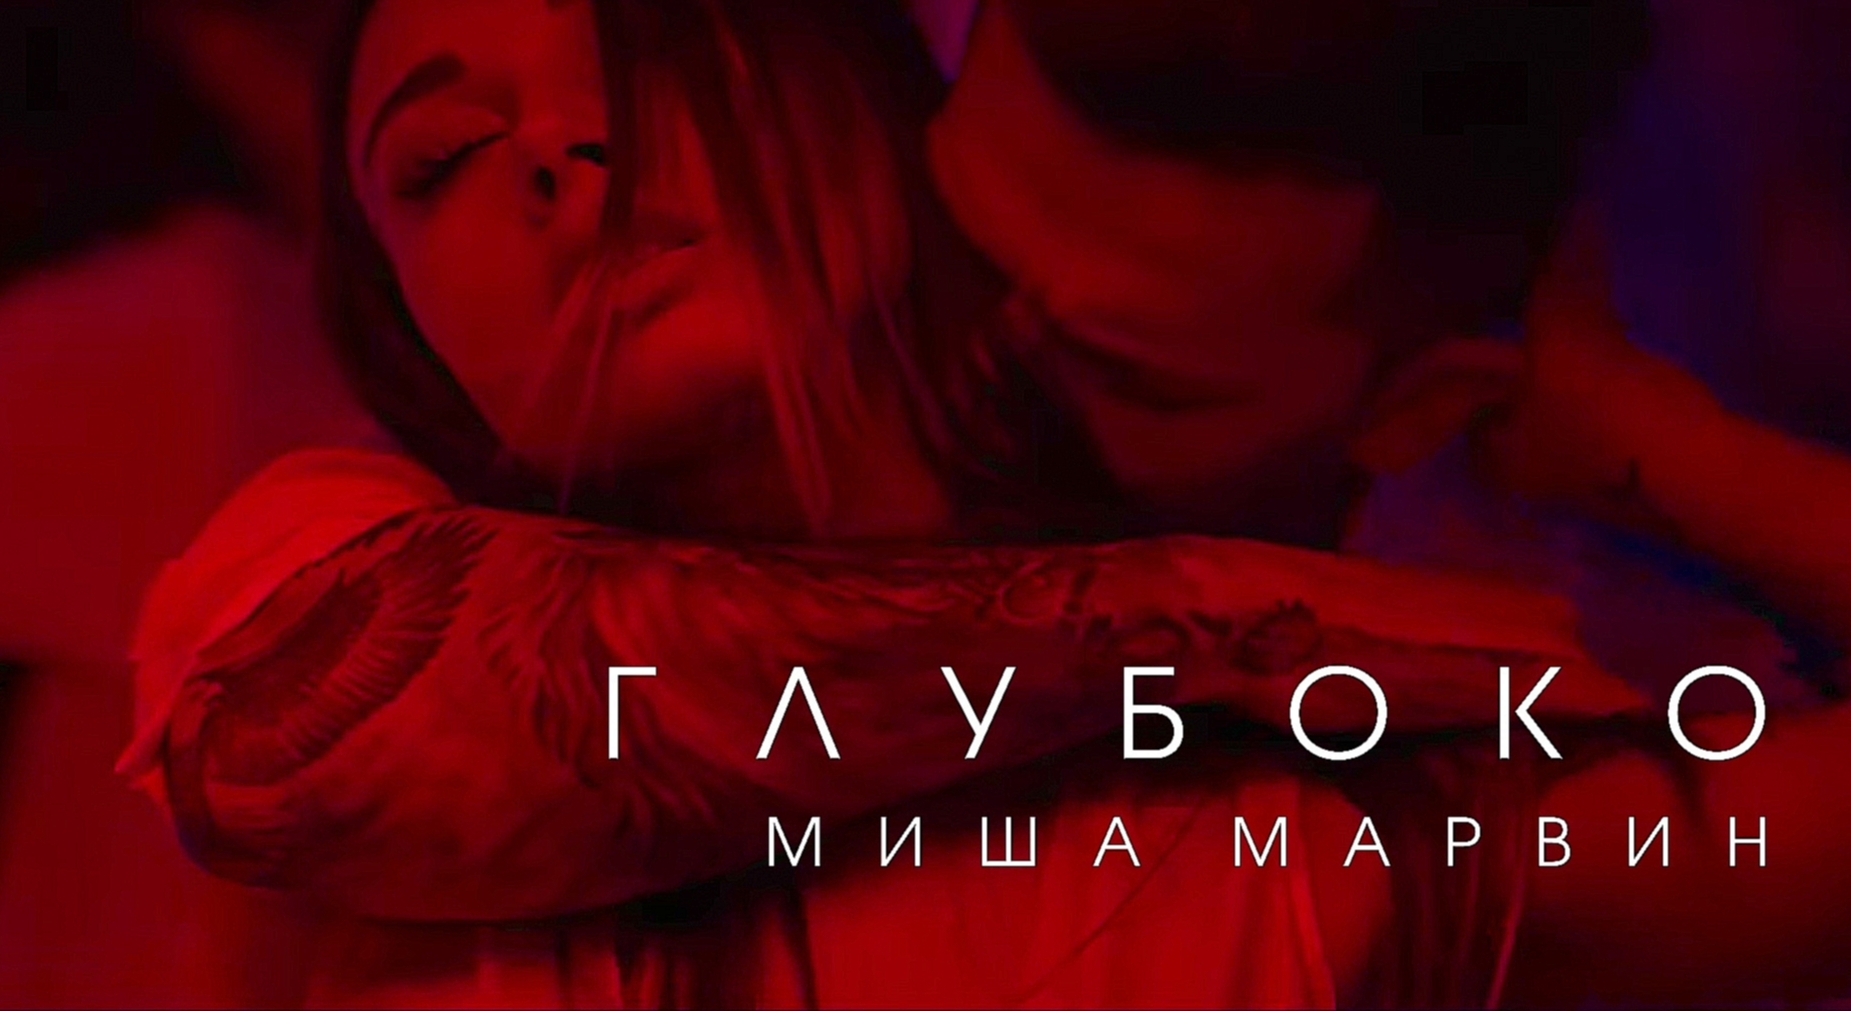 Миша Марвин - Глубоко (премьера клипа, 2017) - видеоклип на песню